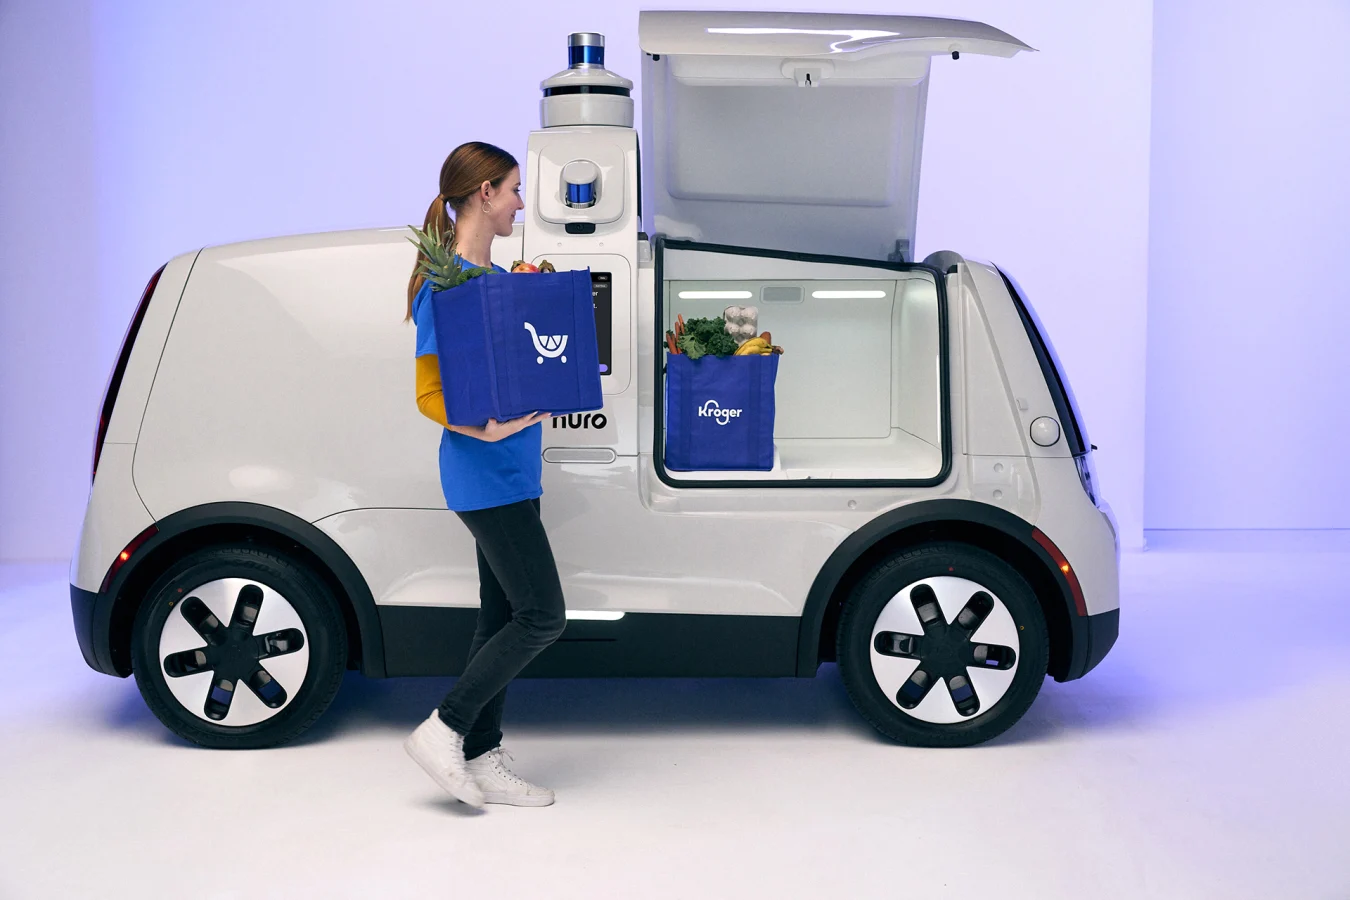 Nuro's third-gen driverless delivery vehicle 